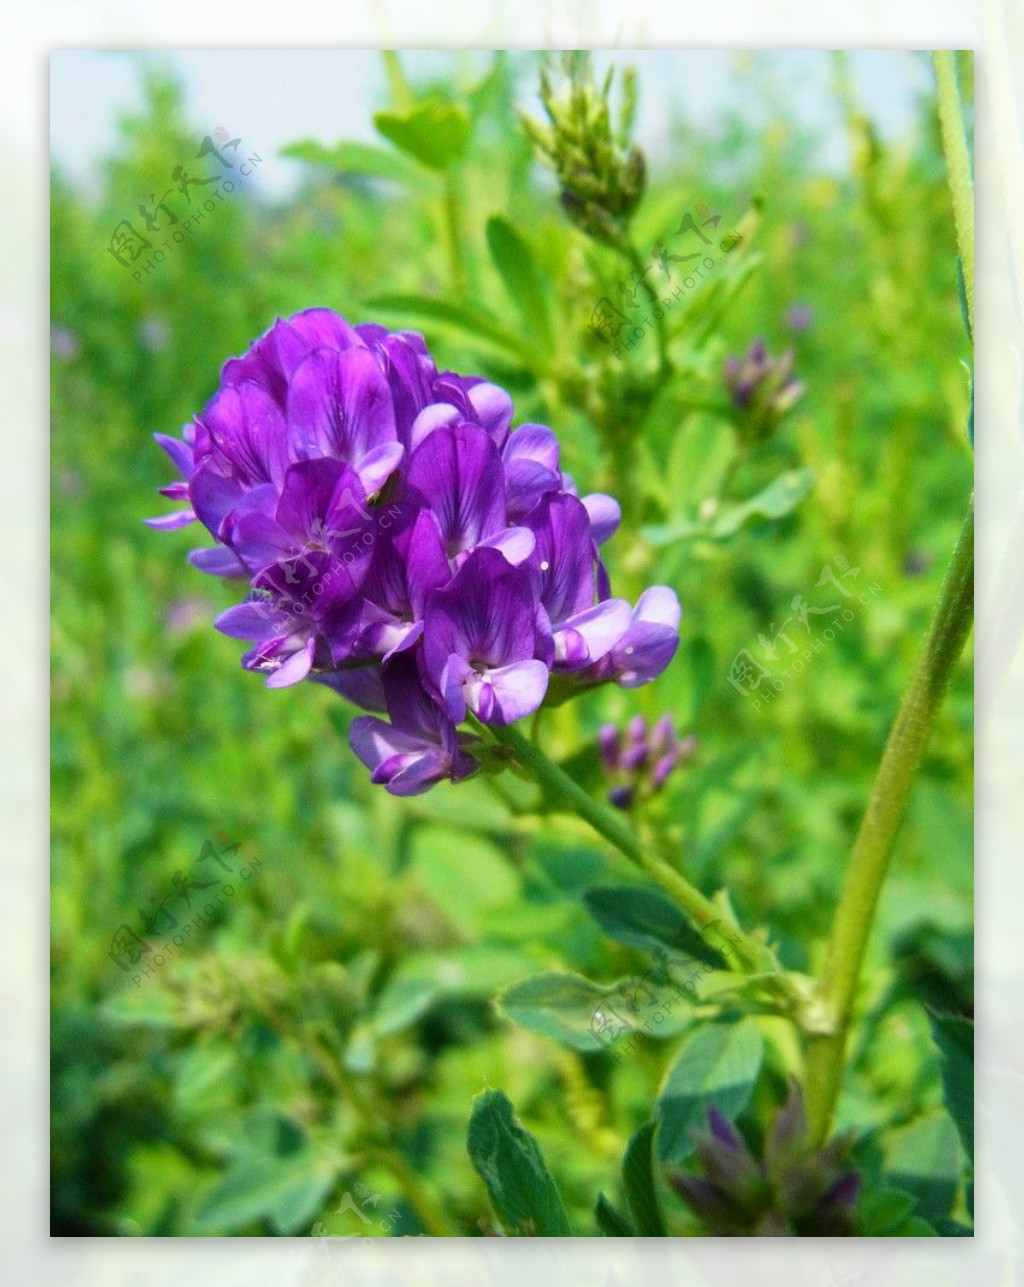 紫苜蓿图片_风景花卉的紫苜蓿图片大全 - 花卉网